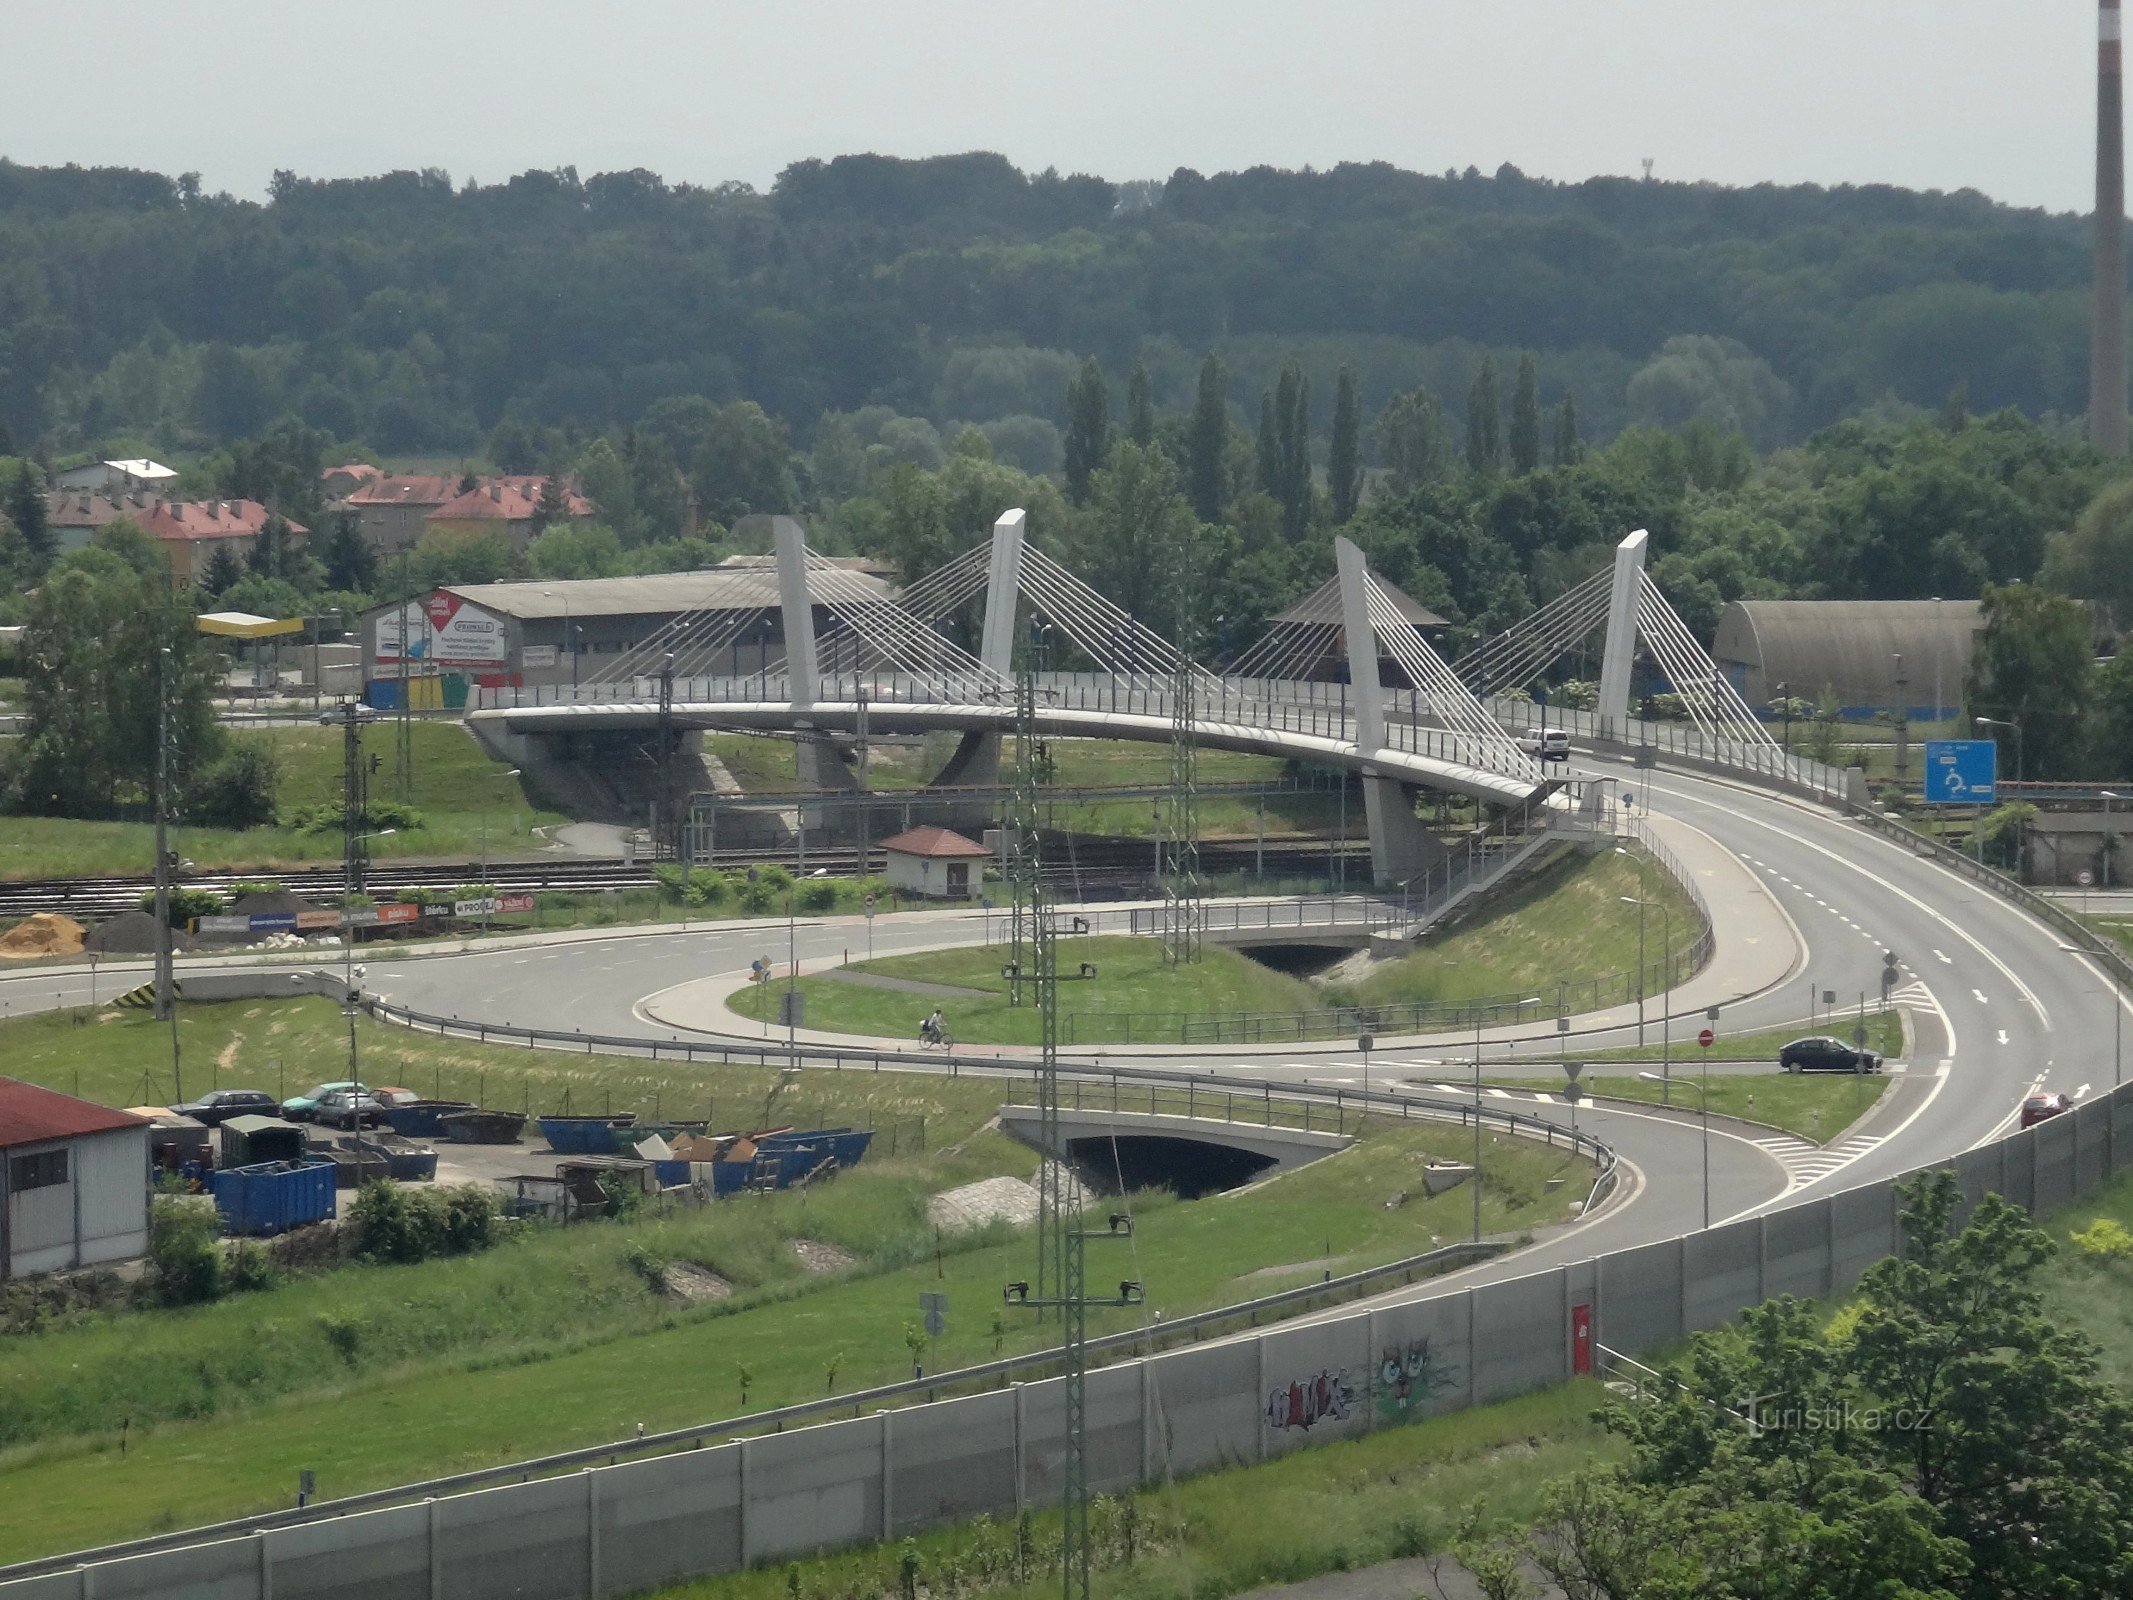 Bohumínin näkymä tornista rautatien ylittävällä sillalla, joka yhdistää Nový Bohumínin ja Bohumín-Skřečoňin